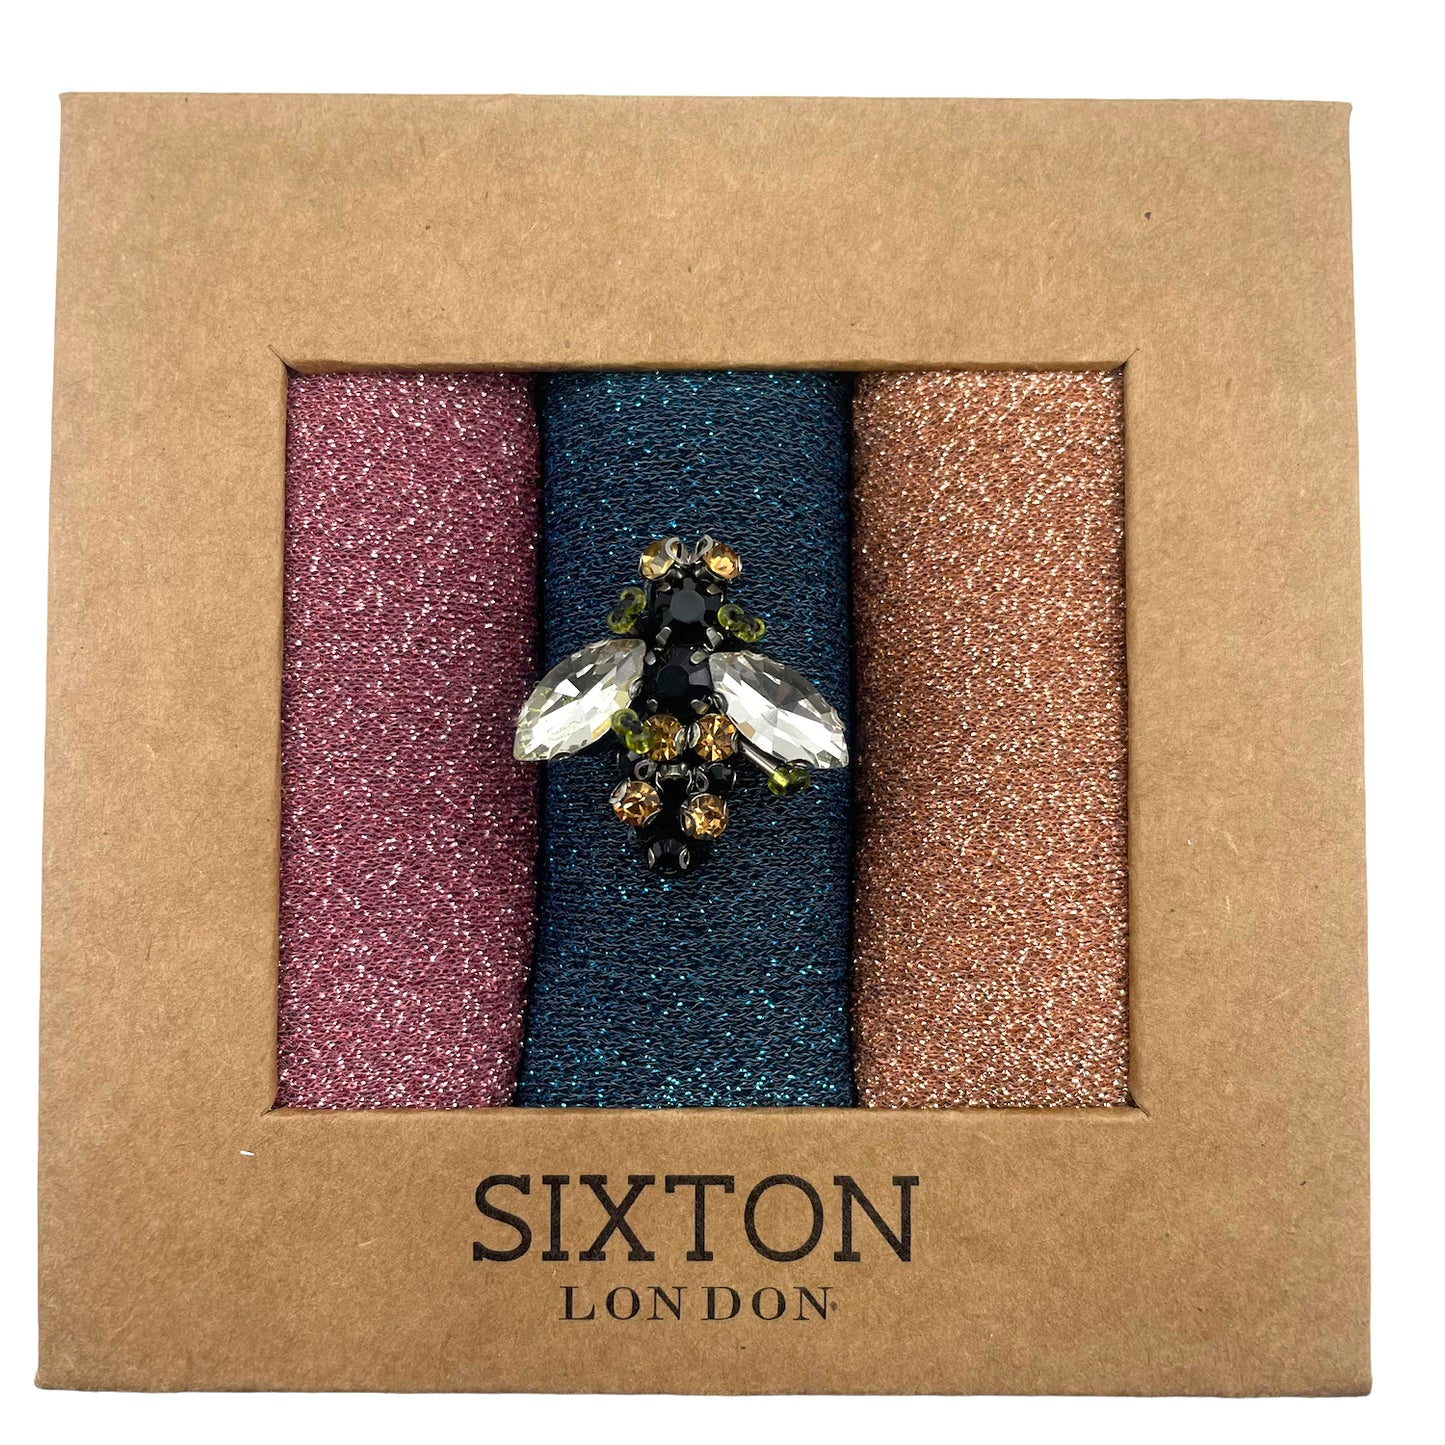 Rio trio Roxy sock box with sparkly pin